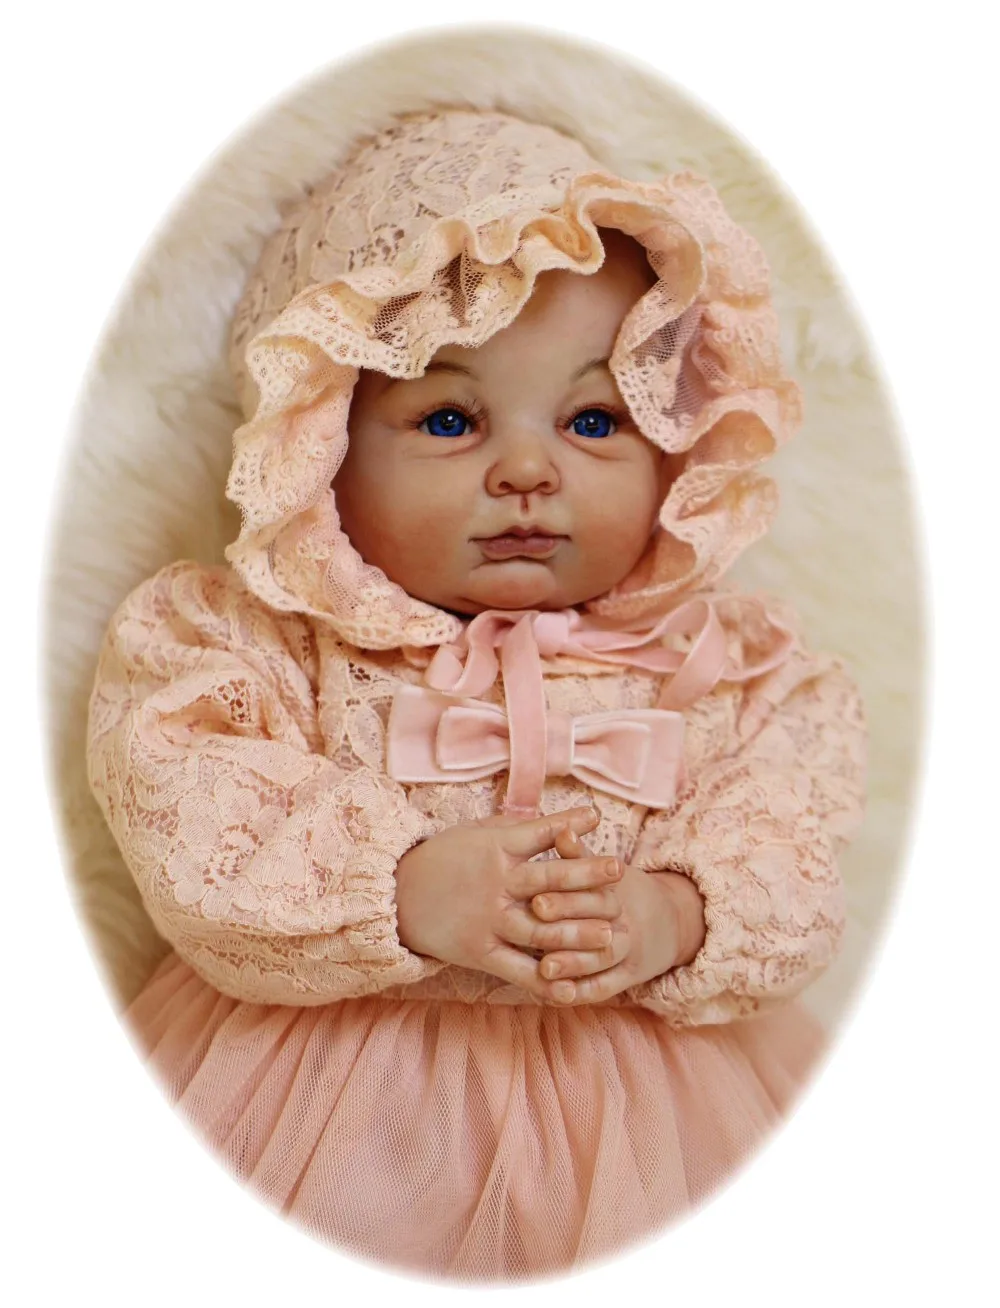 Изысканный ручной реальные Детские куклы Reborn 22 "Soft Touch силикона новорожденных куклы творческий дети любовника подарок